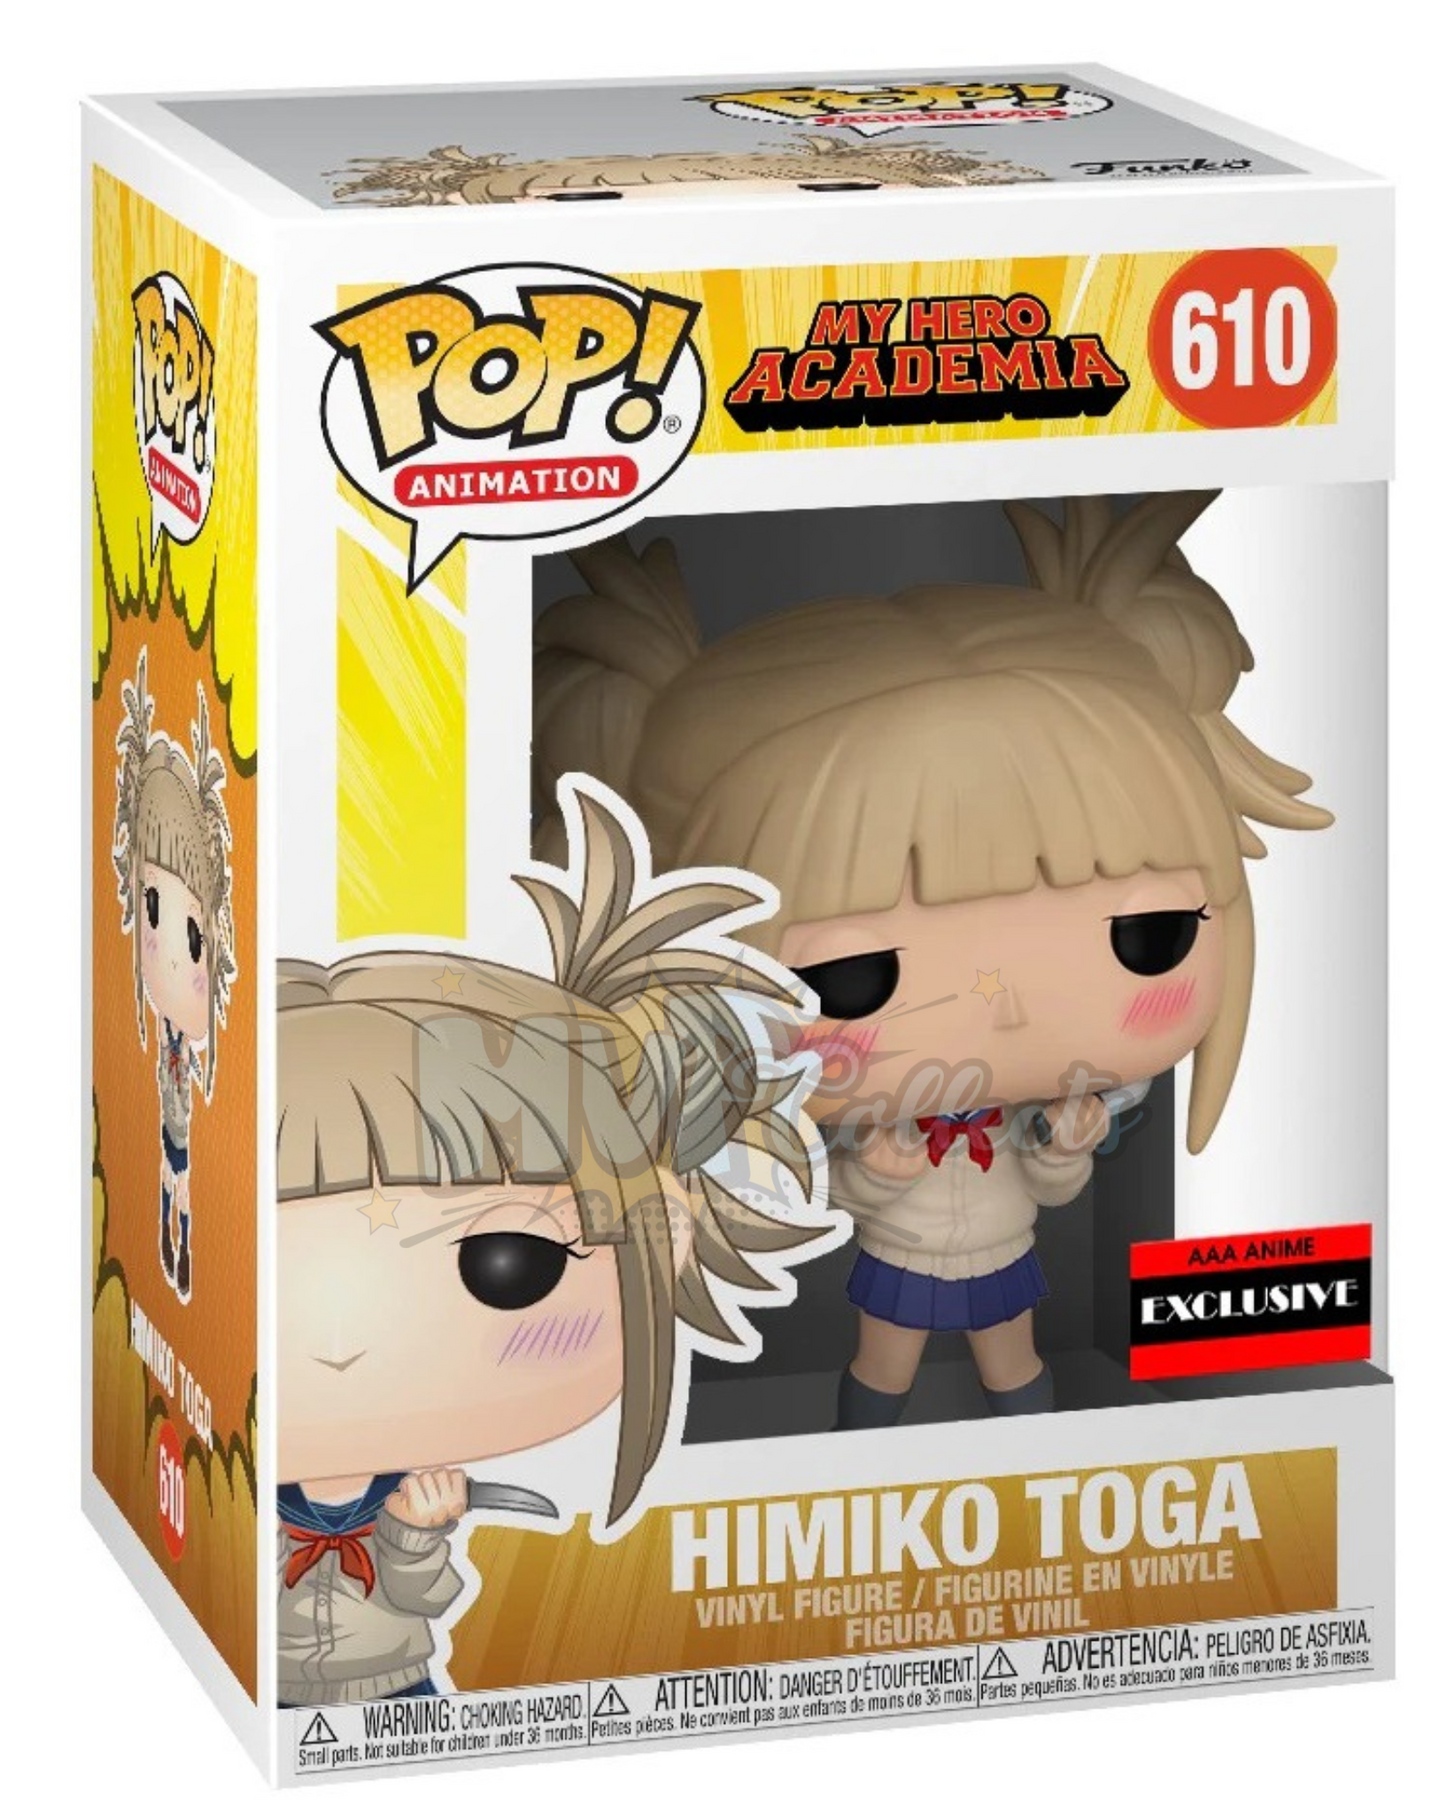 Himiko Toga POP! (My Hero Academia) 610 AAA Exclusive